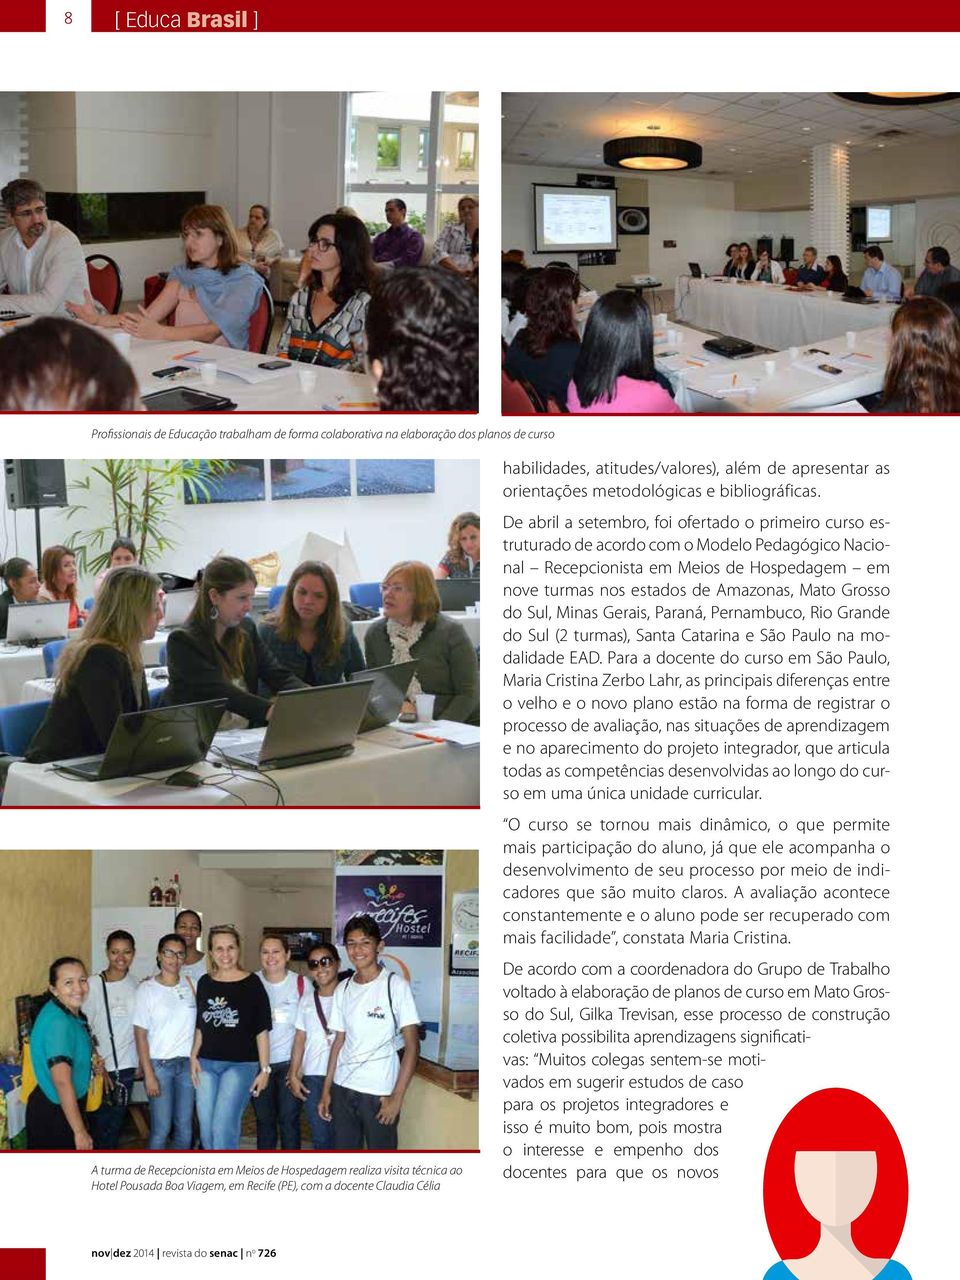 De abril a setembro, foi ofertado o primeiro curso estruturado de acordo com o Modelo Pedagógico Nacional Recepcionista em Meios de Hospedagem em nove turmas nos estados de Amazonas, Mato Grosso do